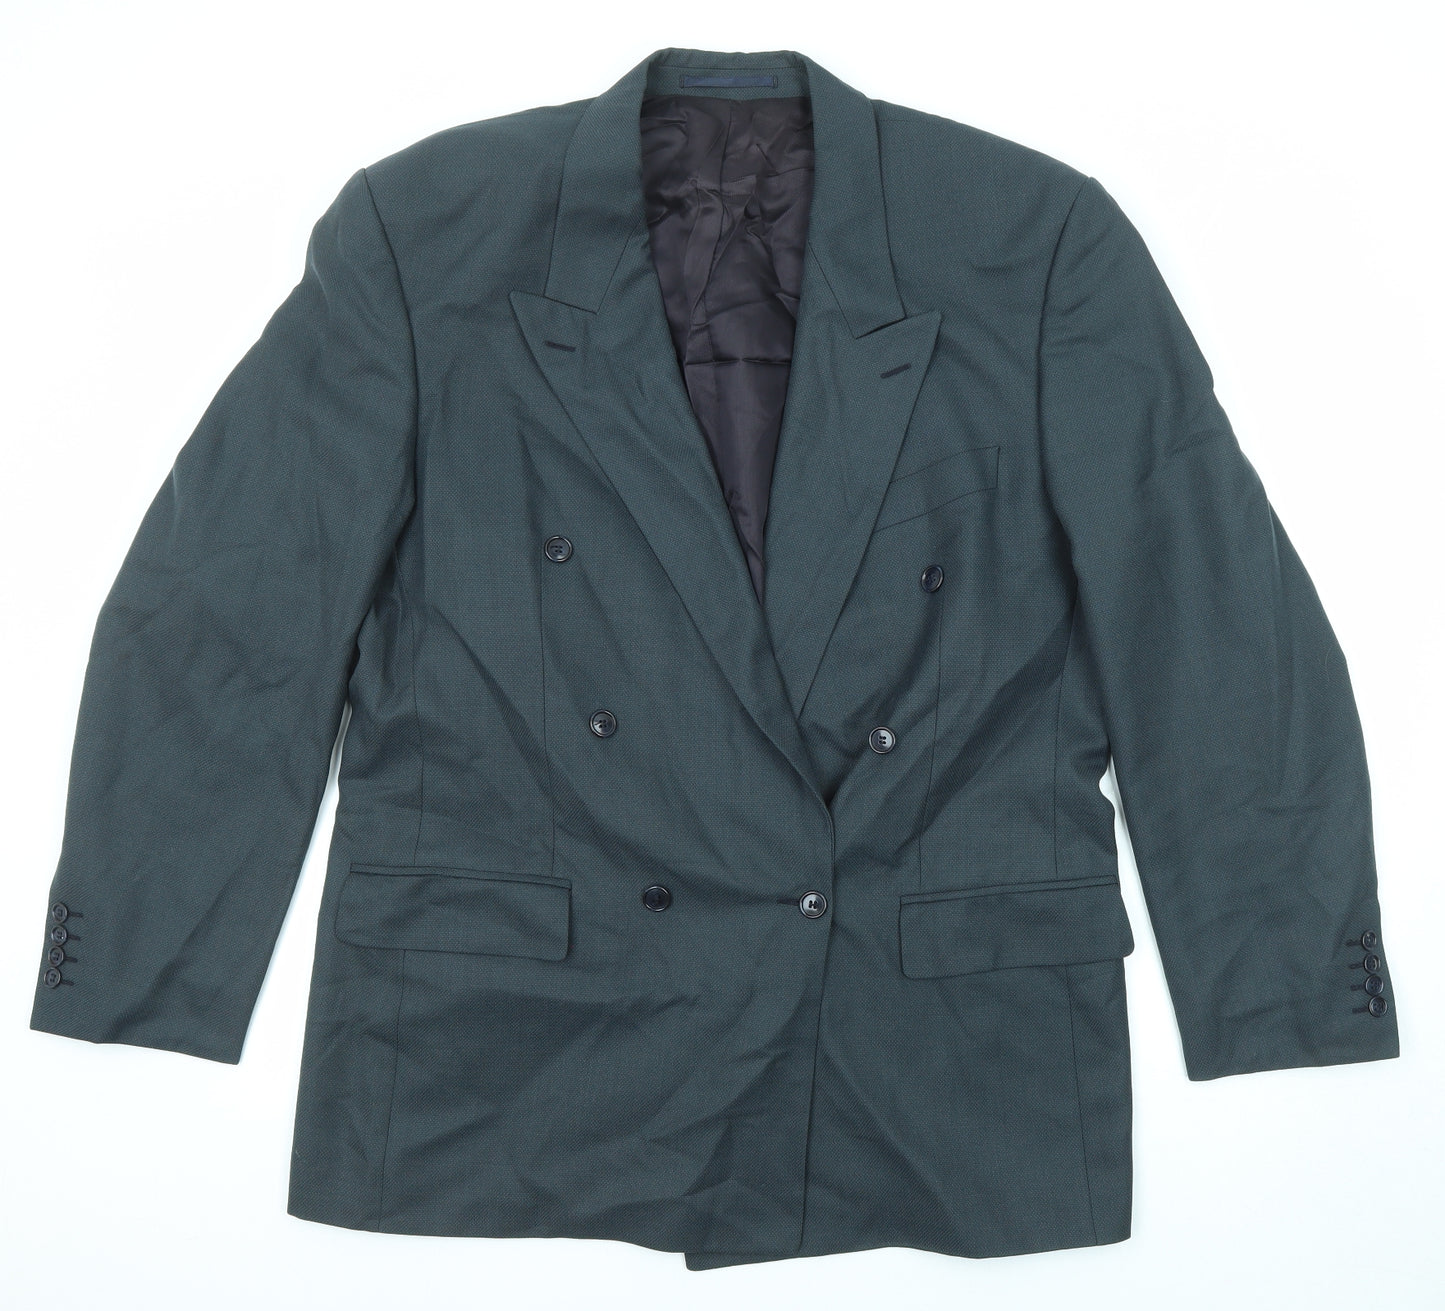 Pin Stripe Mens Grey Wool Jacket Suit Jacket Size 42 Regular